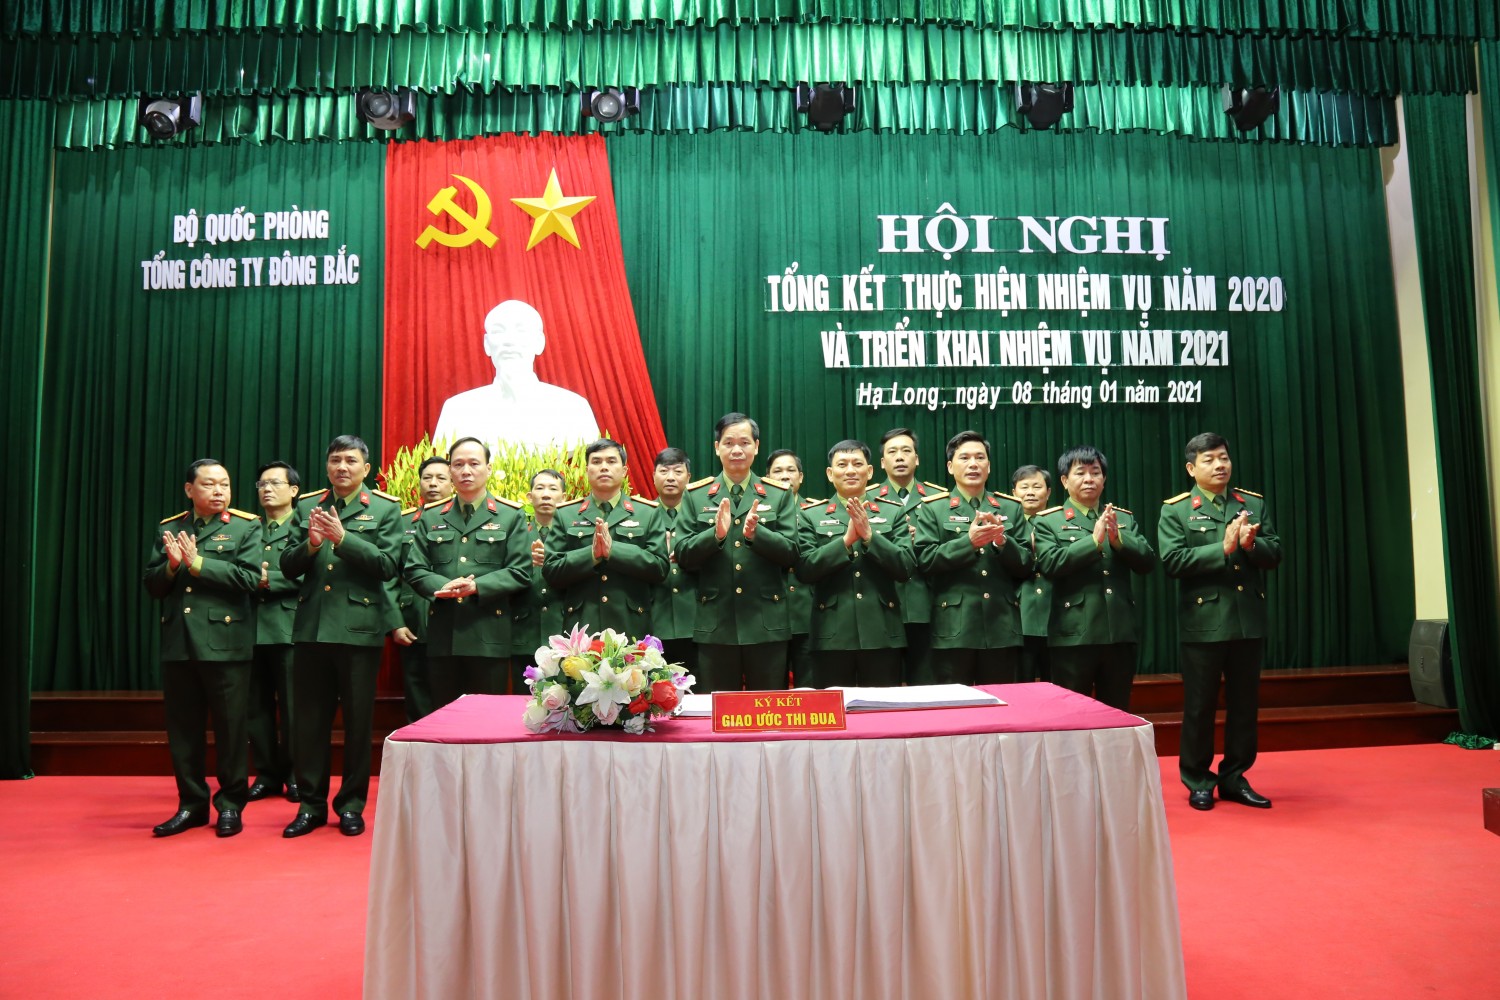 Đồng chí Đại tá Phương Kim Minh, Tổng Giám đốc Tổng công ty chứng kiến các cơ quan, đơn vị ký kết giao ước thi đua năm 2021.